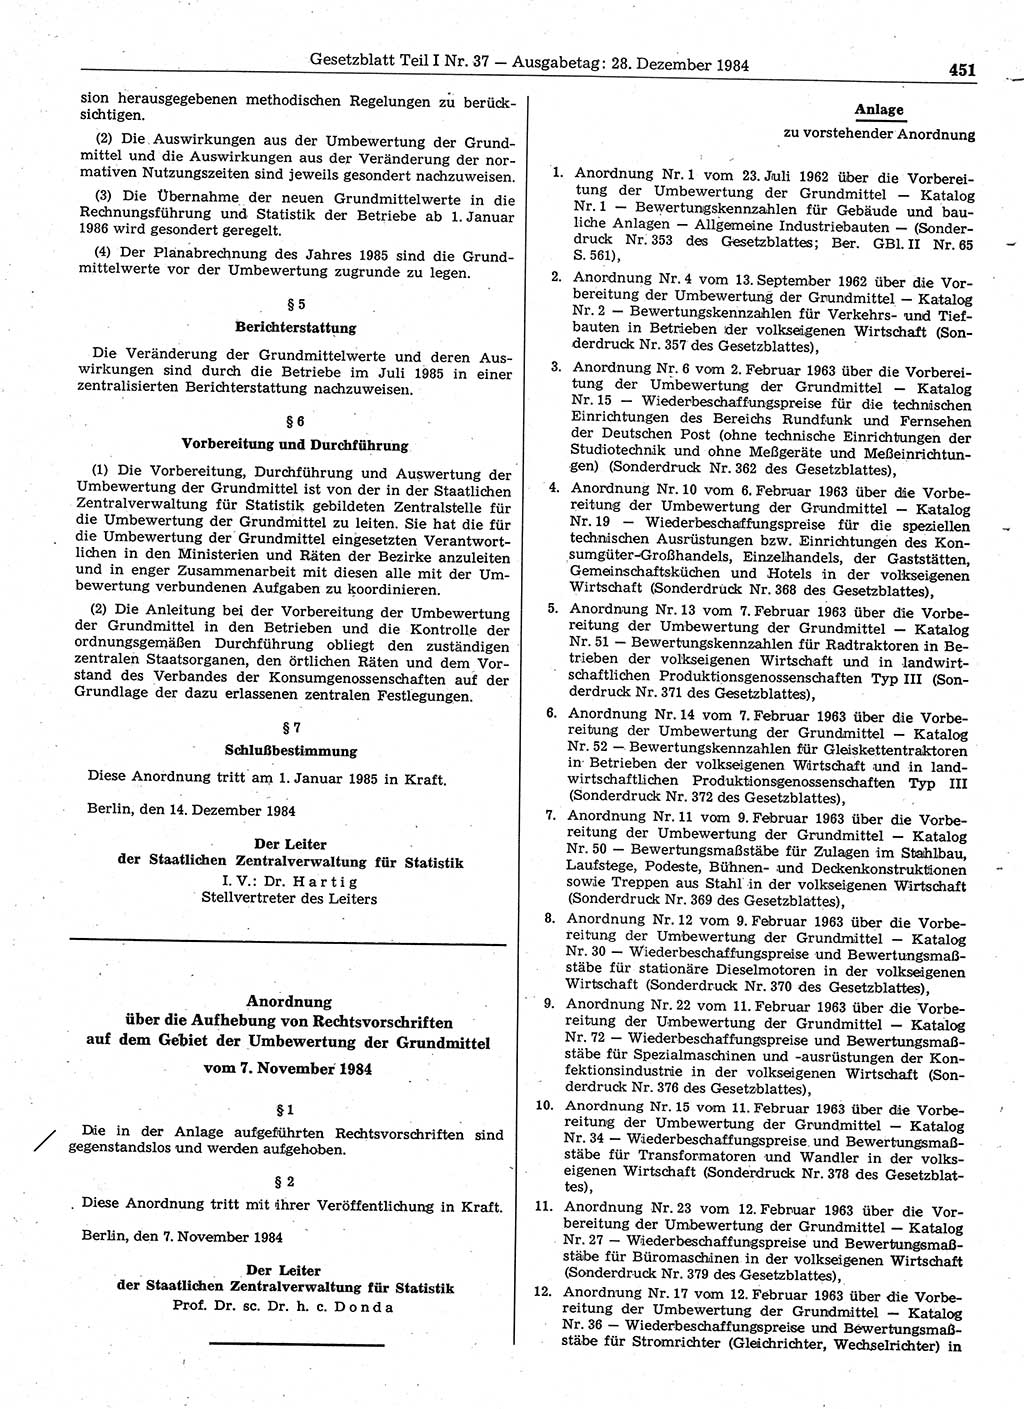 Gesetzblatt (GBl.) der Deutschen Demokratischen Republik (DDR) Teil Ⅰ 1984, Seite 451 (GBl. DDR Ⅰ 1984, S. 451)